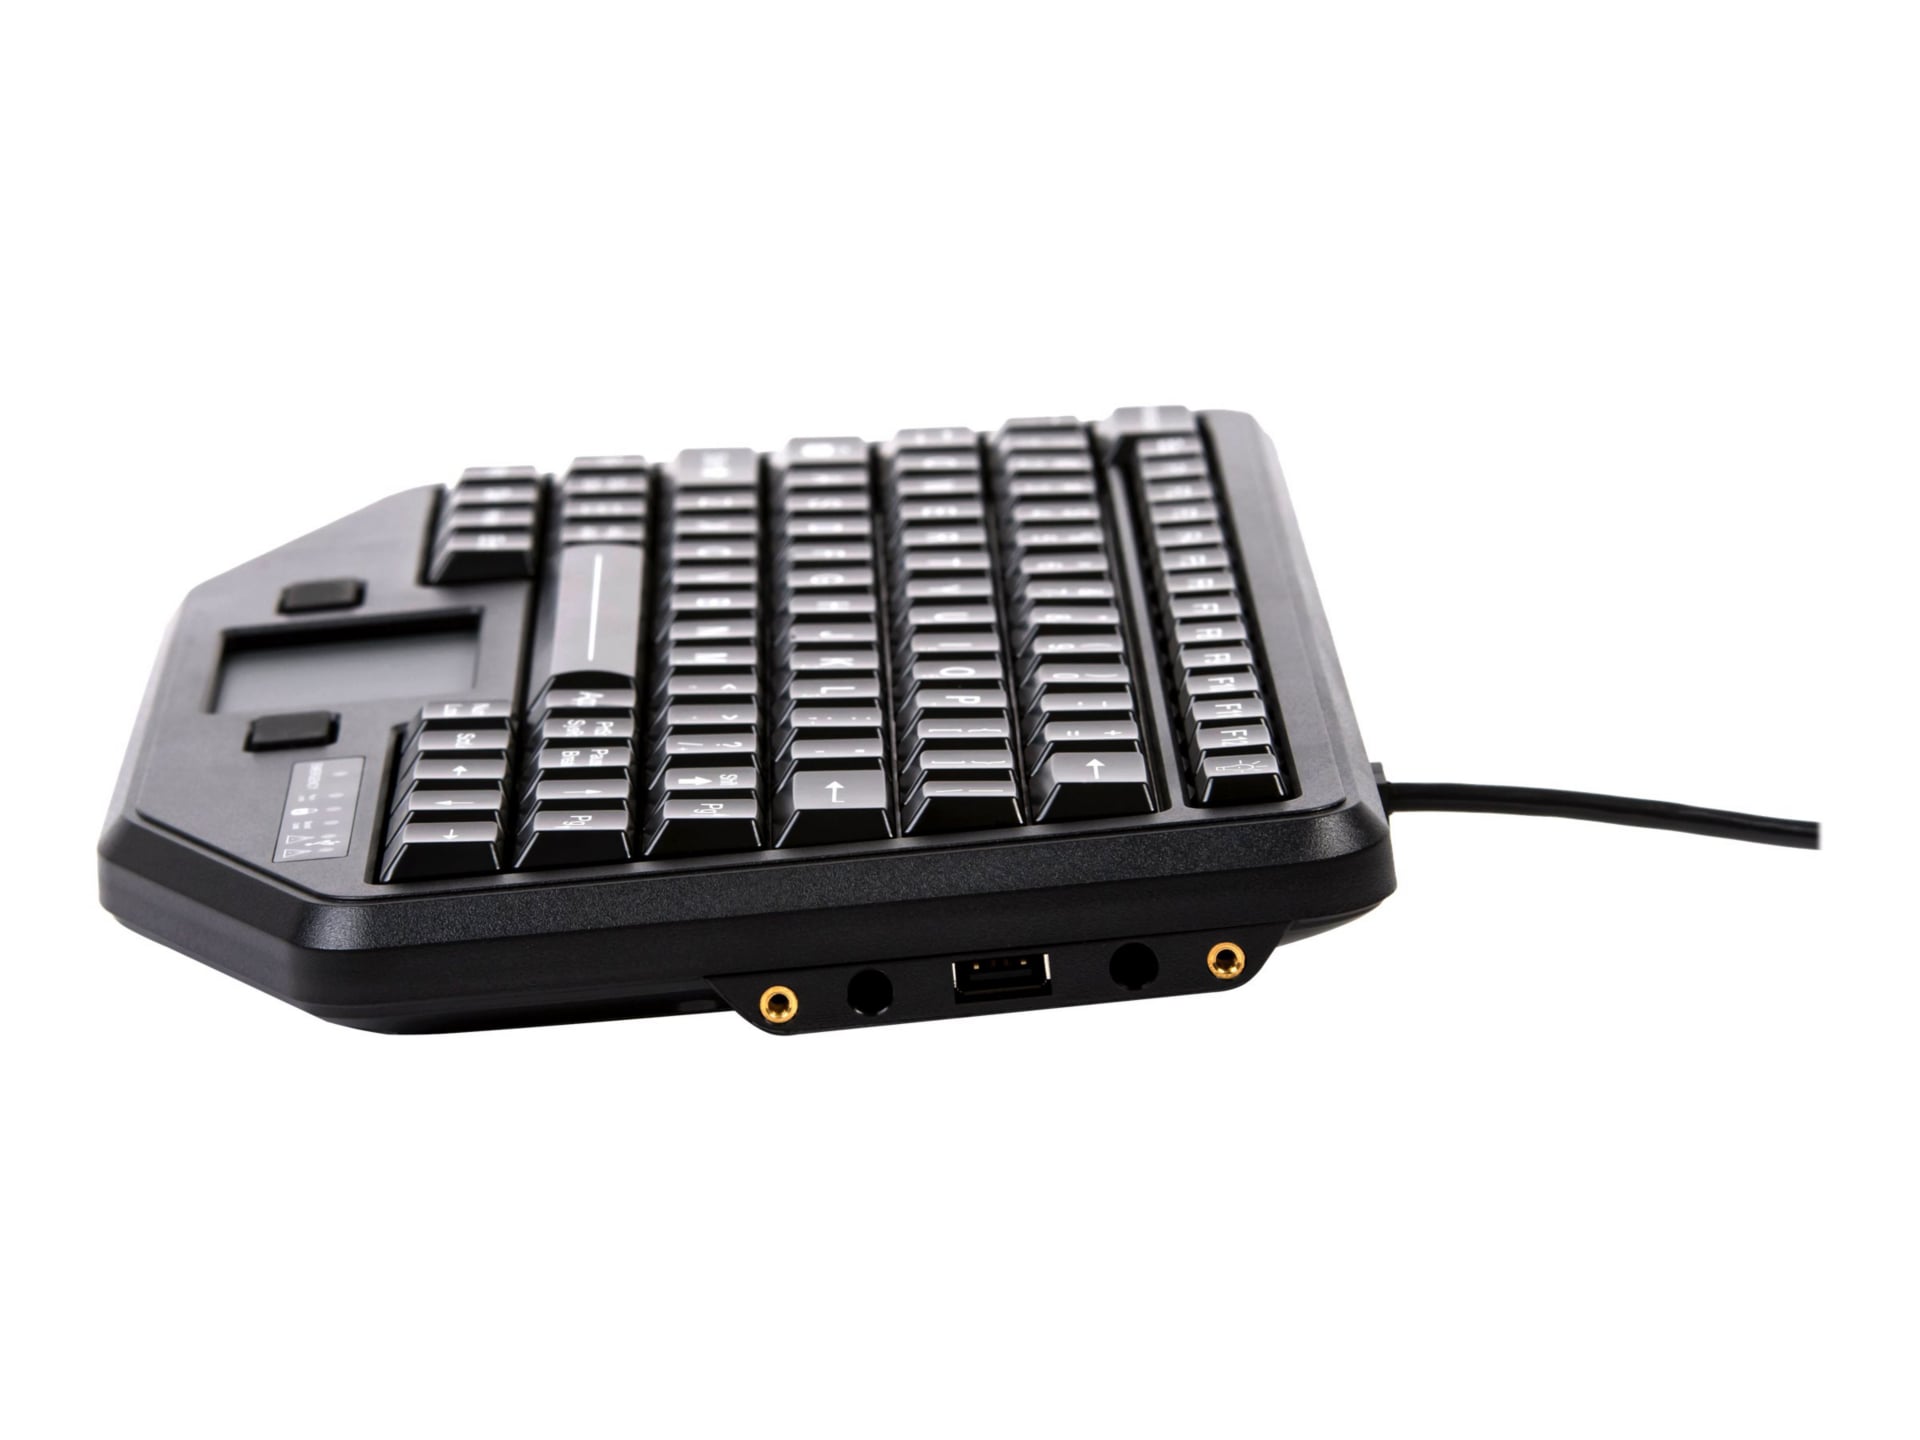 Panasonic iKey Rugged Mobile Keyboard